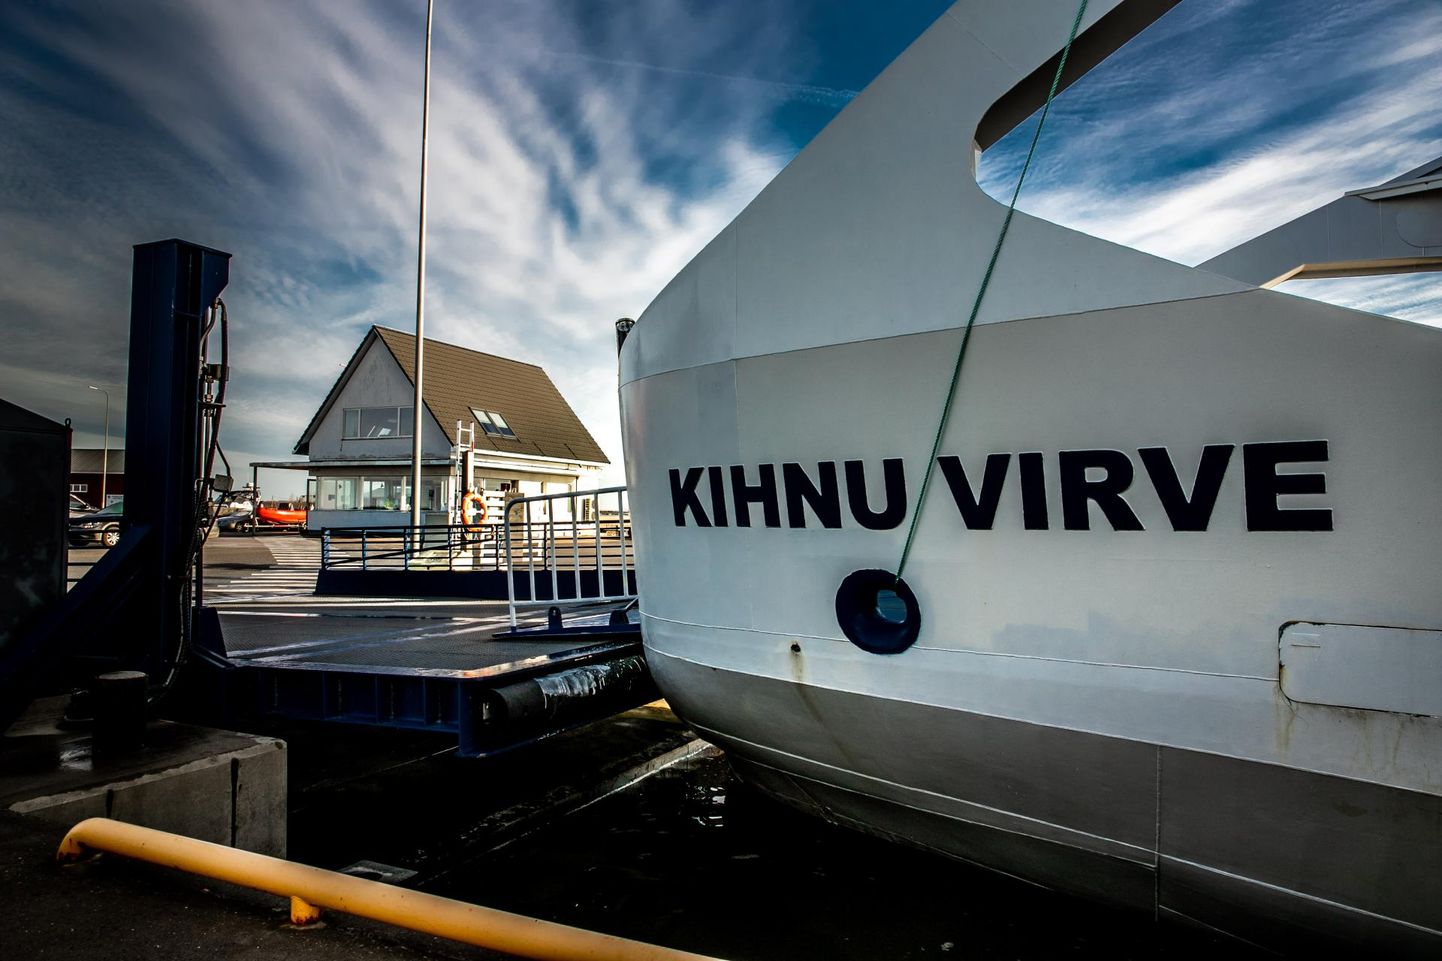 Parvlaev Kihnu Virve teenindab Kihnut kui Manilaidu külastavaid turiste, kuide eelkõige on laev saareelanike põhiline ühendustee mandriga.